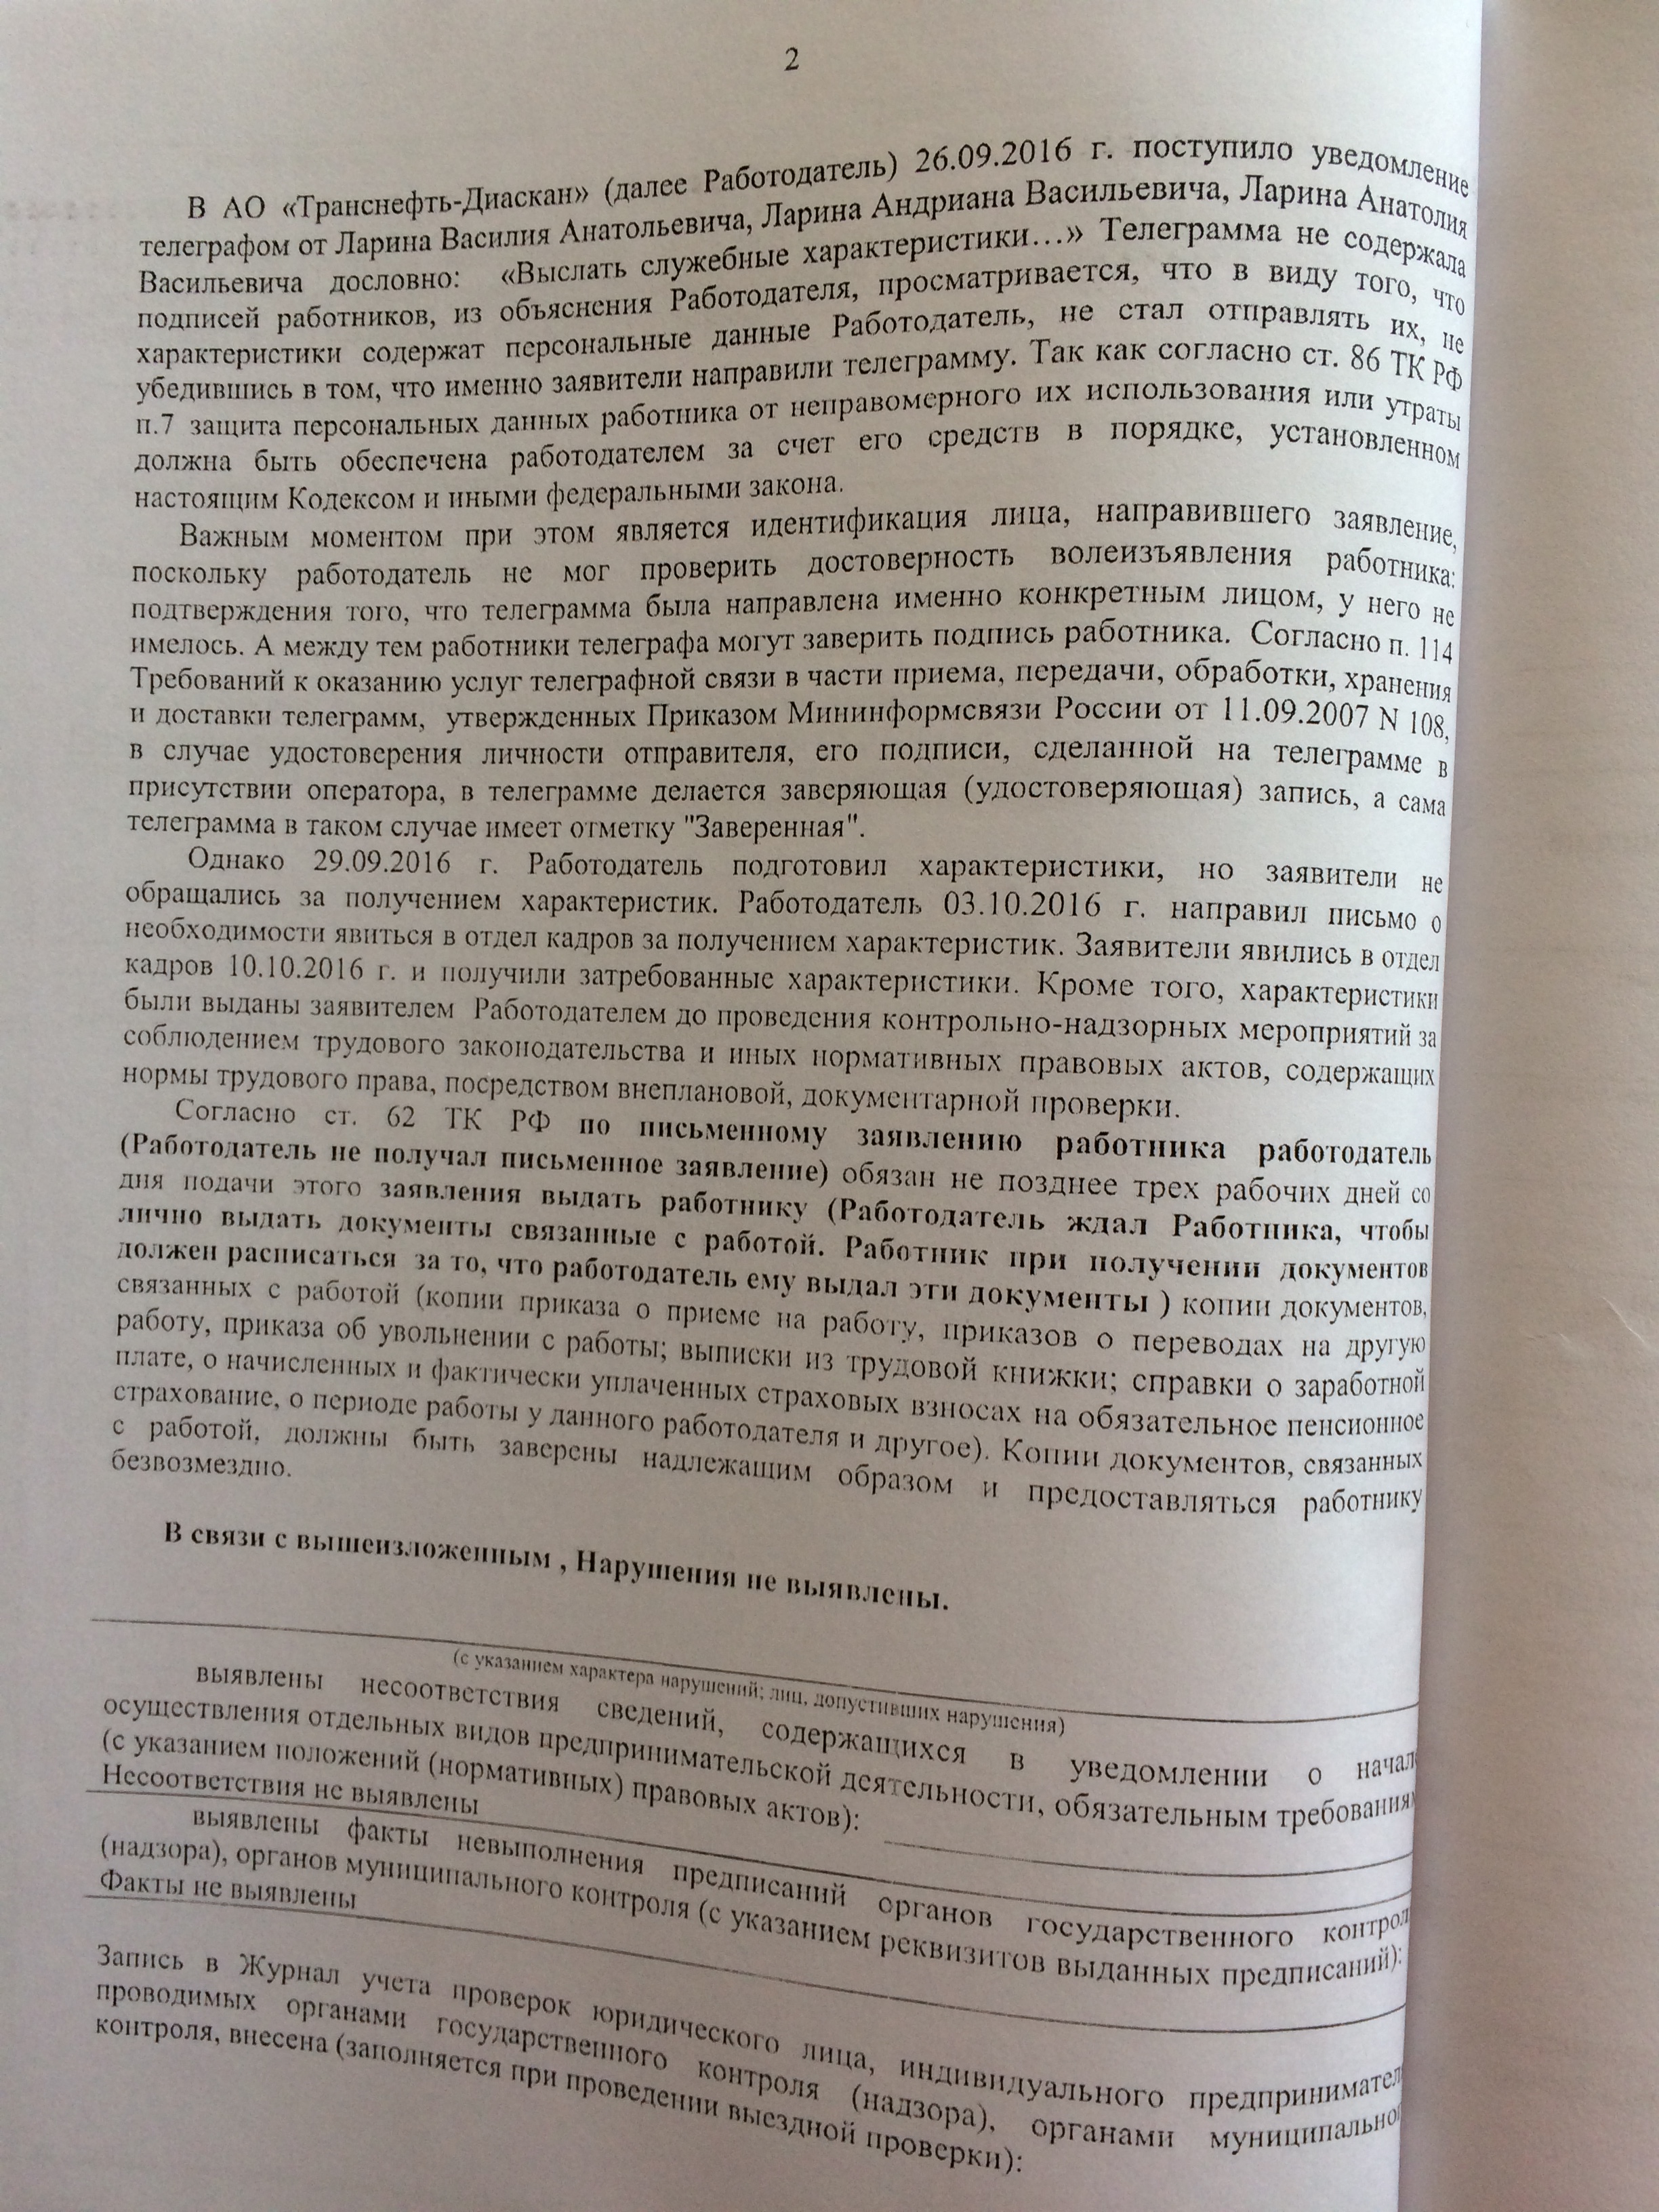 Фото документов проверки Луховицкой городской прокуратурой - 117 (5)